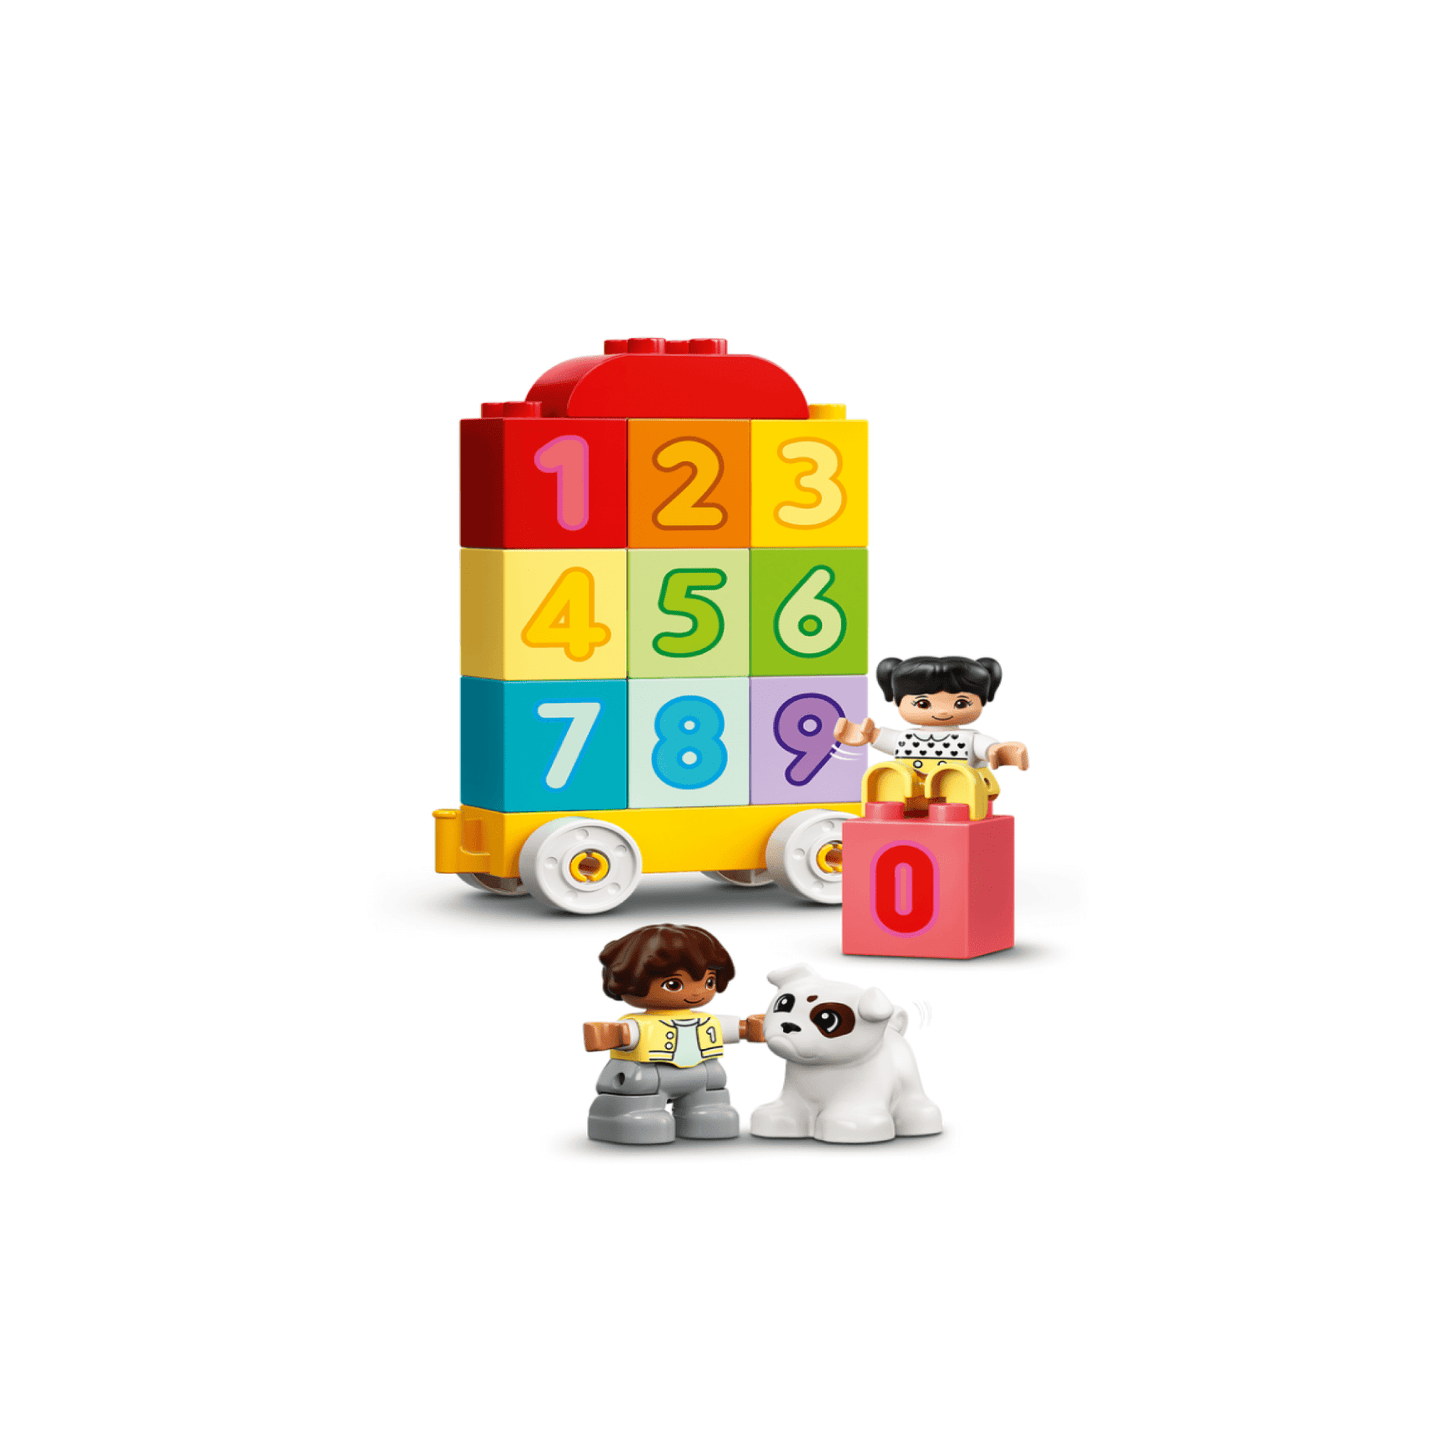 Tren Lego de Nuumero - Aprendiendo a Contar